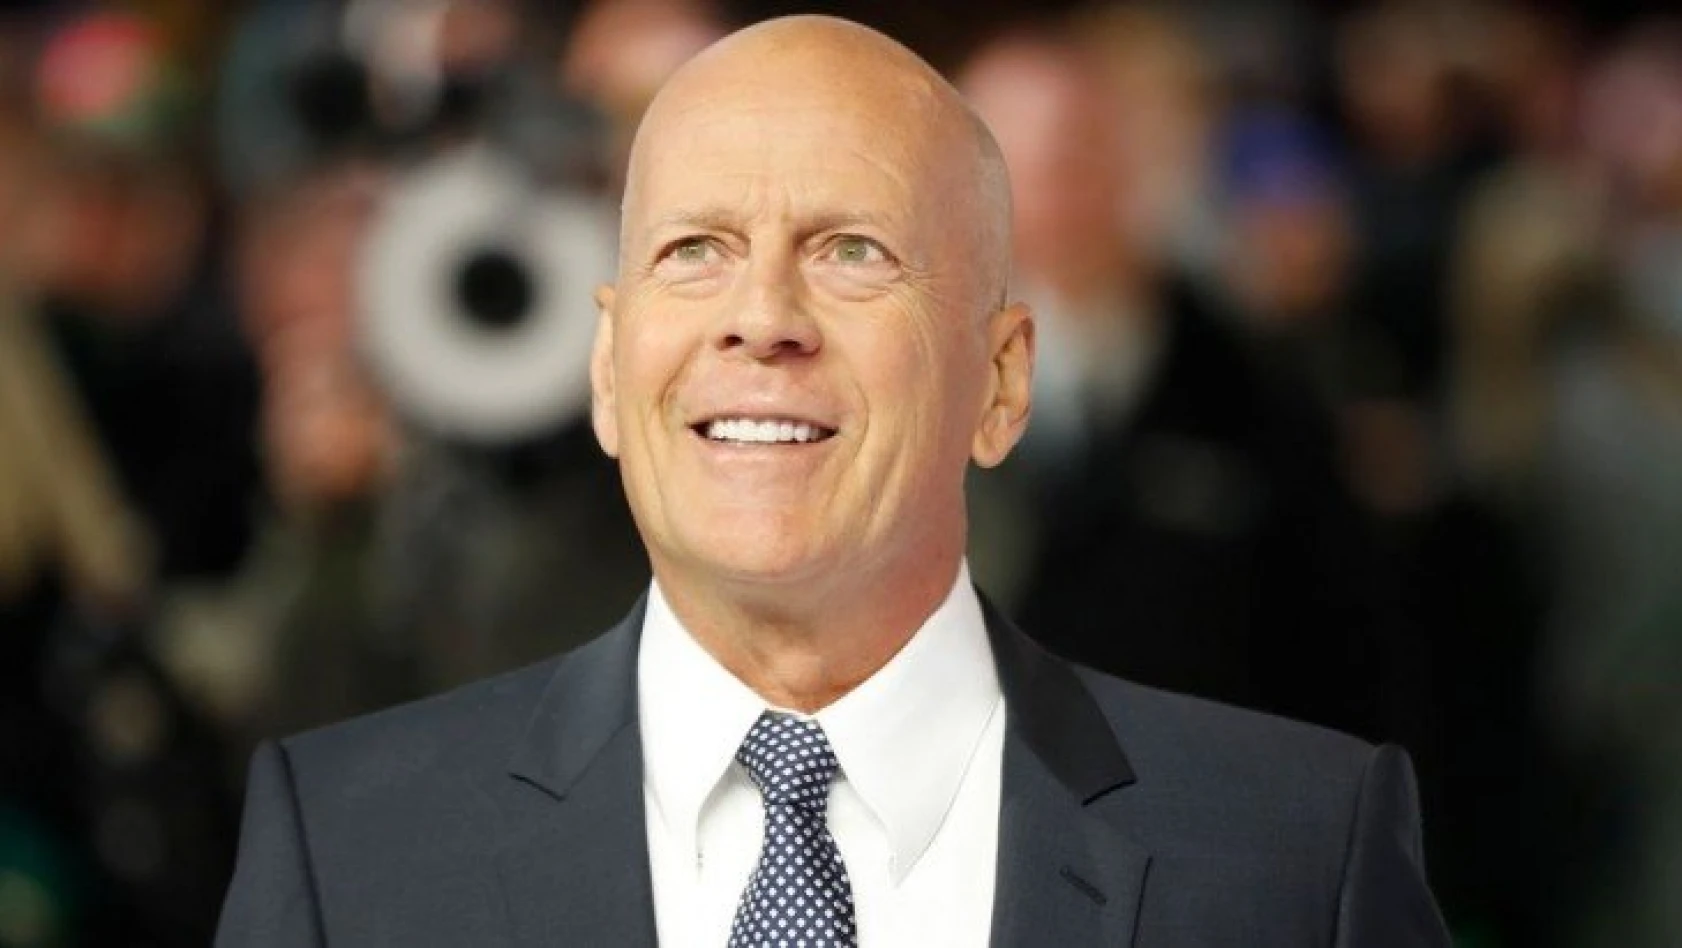 Maske takmayan Bruce Willis, eczaneden kovuldu